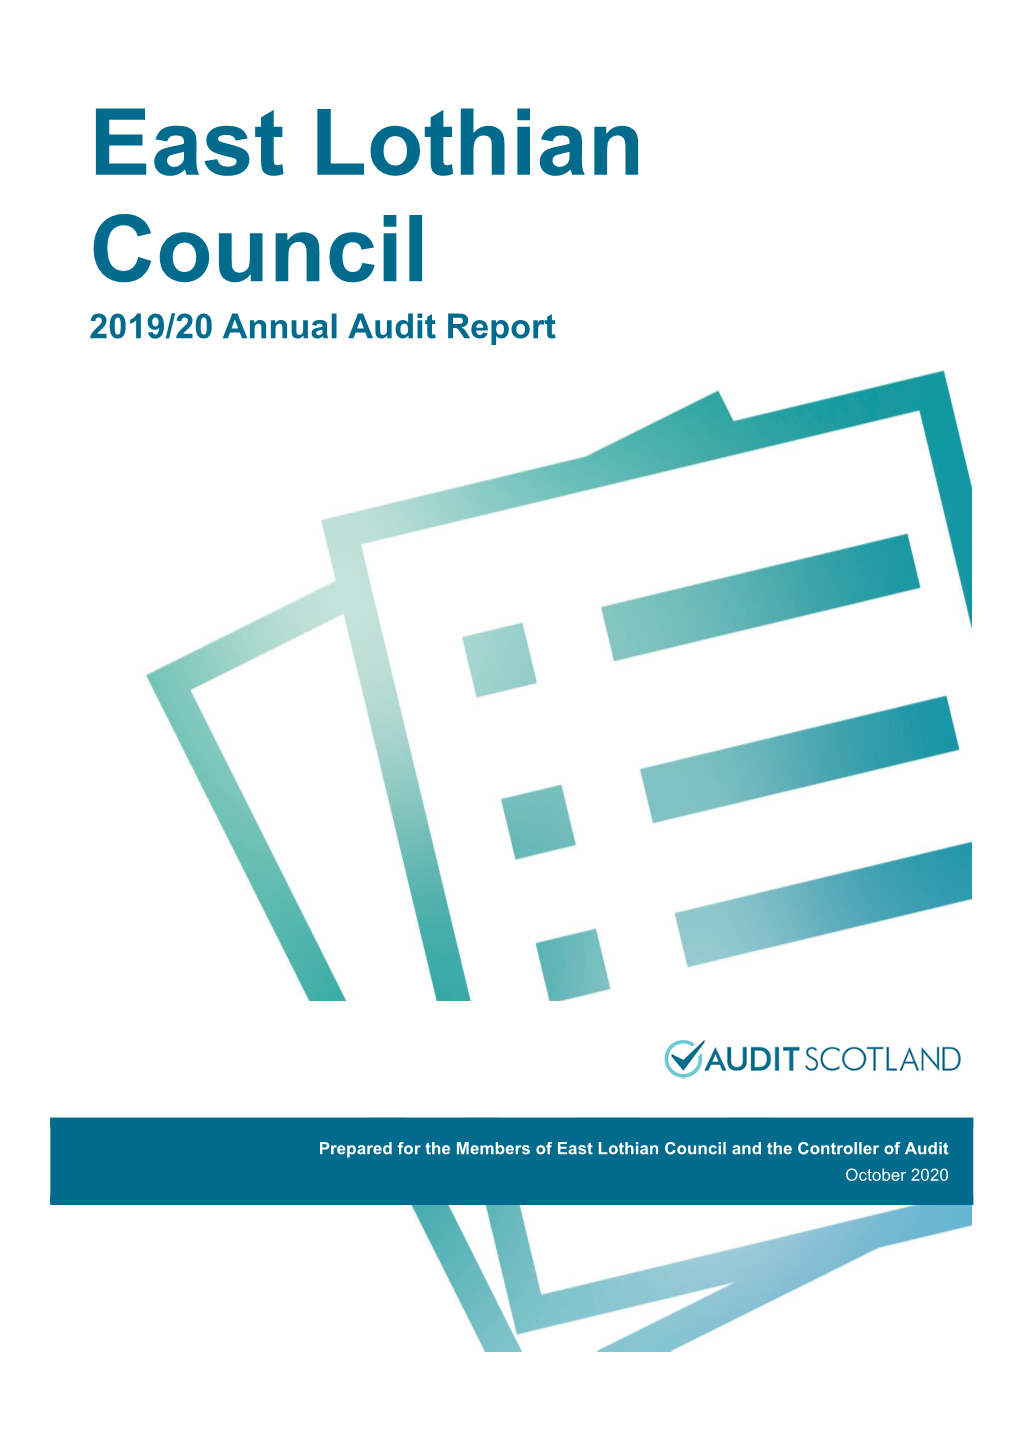 East Lothian Council 2019/20 Annual Audit Report